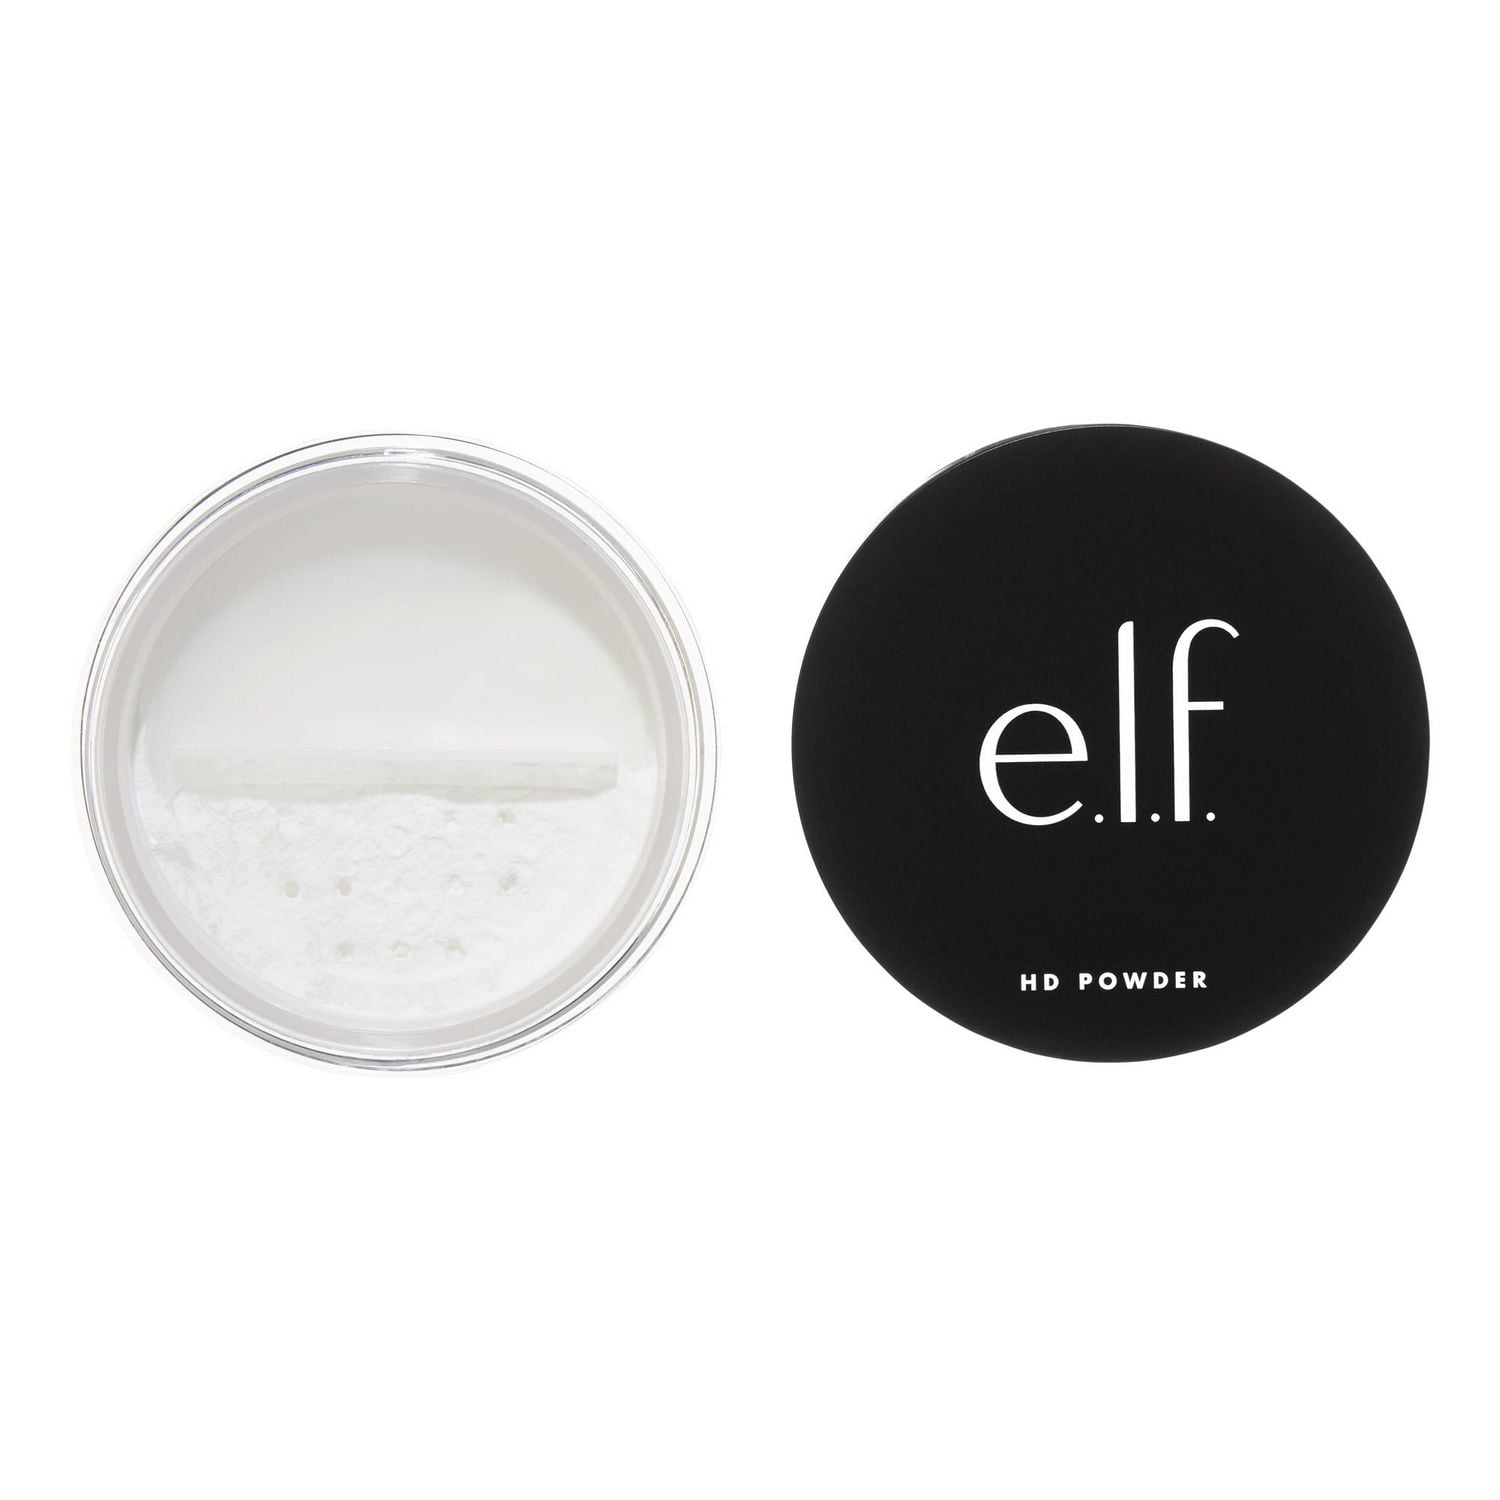 e.l.f. Cosmetics High Definition Powder, HD Powder, 8g 